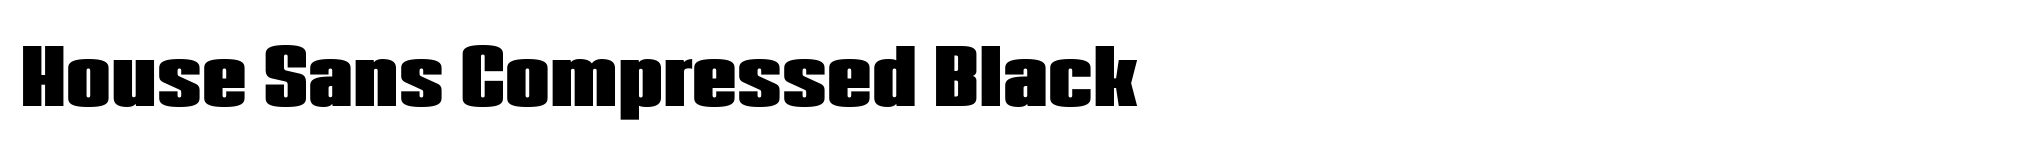 House Sans Compressed Black image